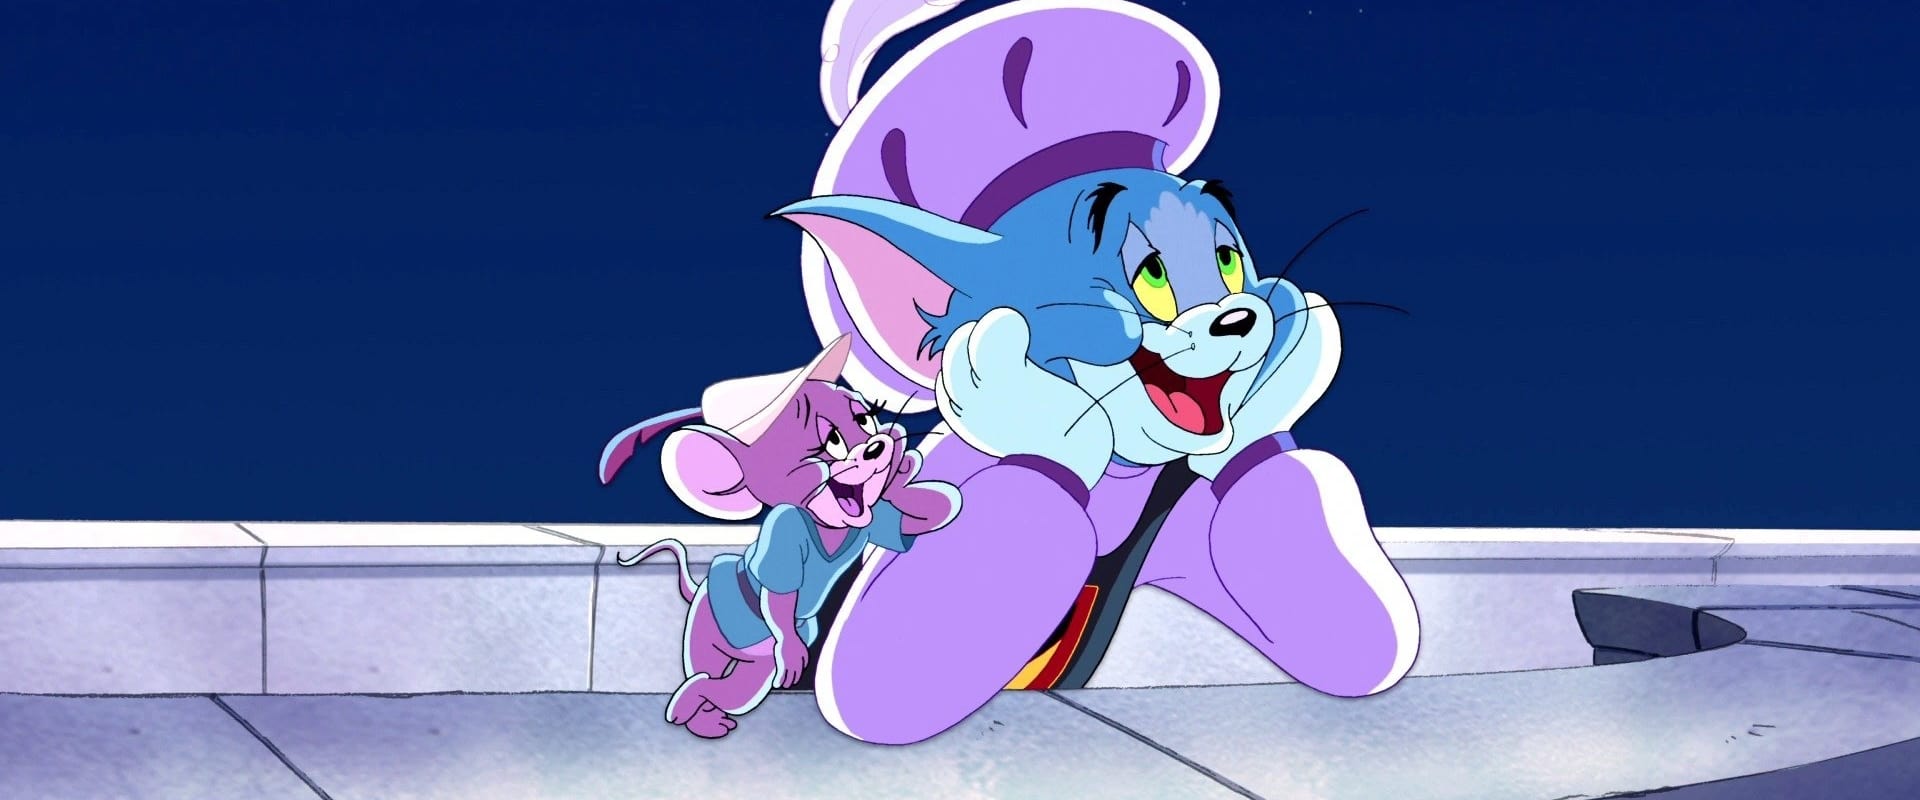 Tom e Jerry - Robin dos Bosques e o seu Fiel Companheiro